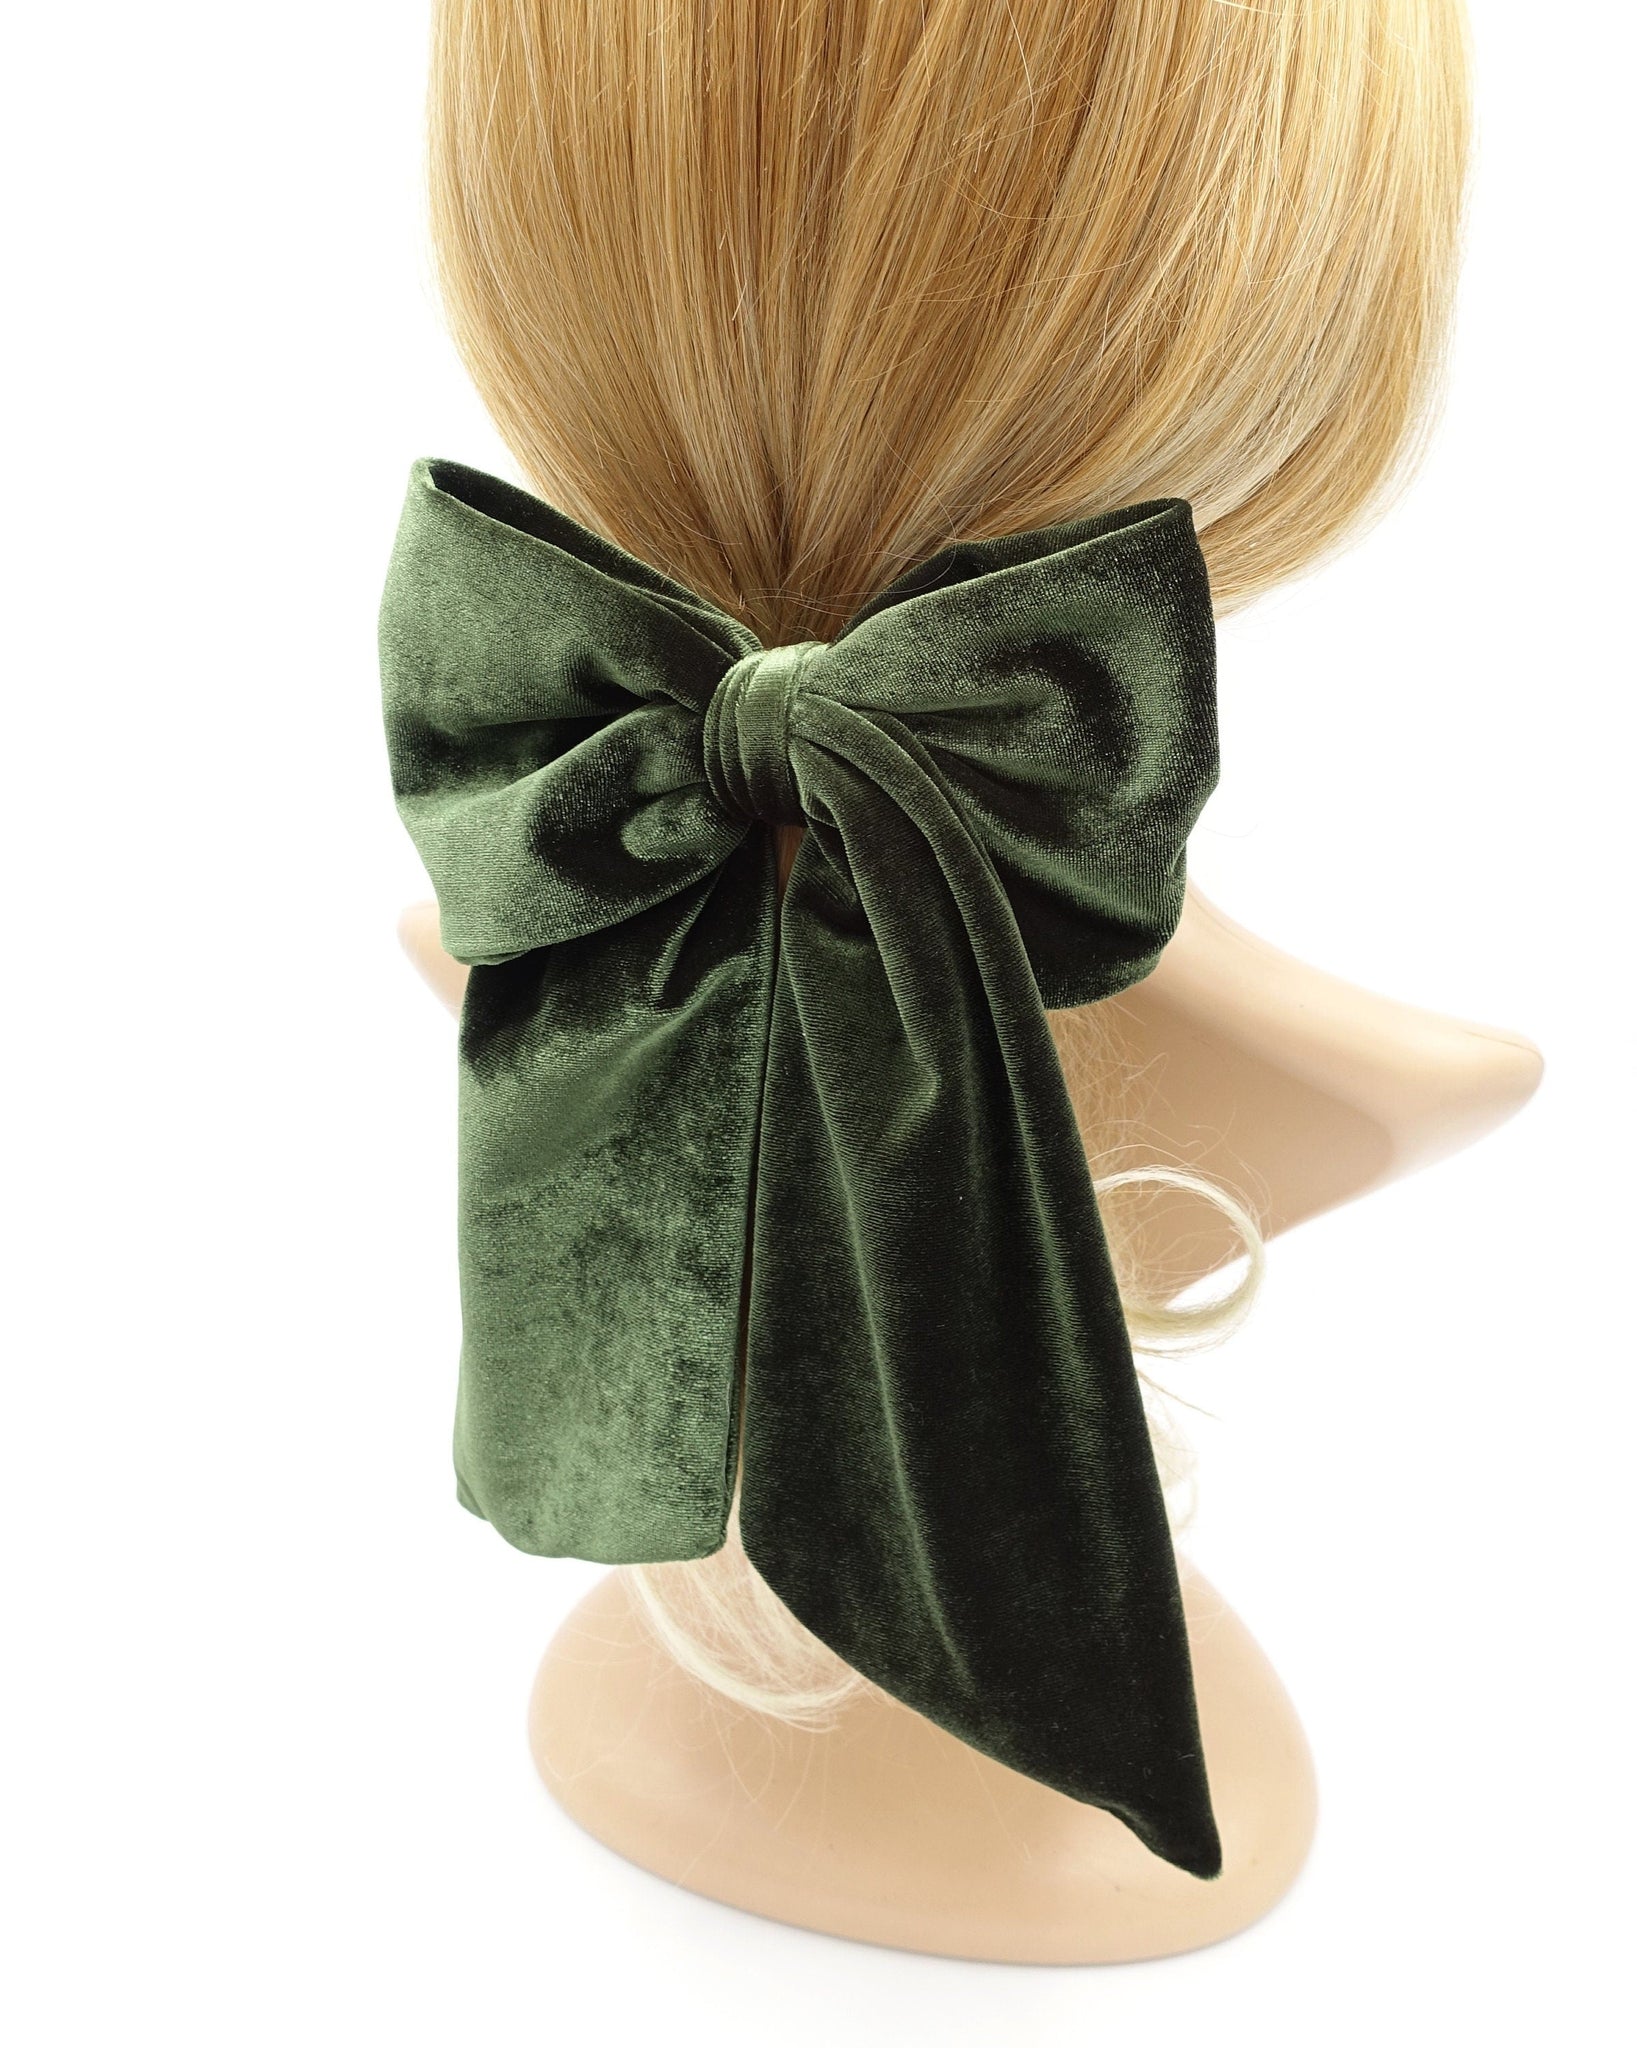 veryshine.com Barrette (Bow) velvet hair bow medium large sized hair accessory for women